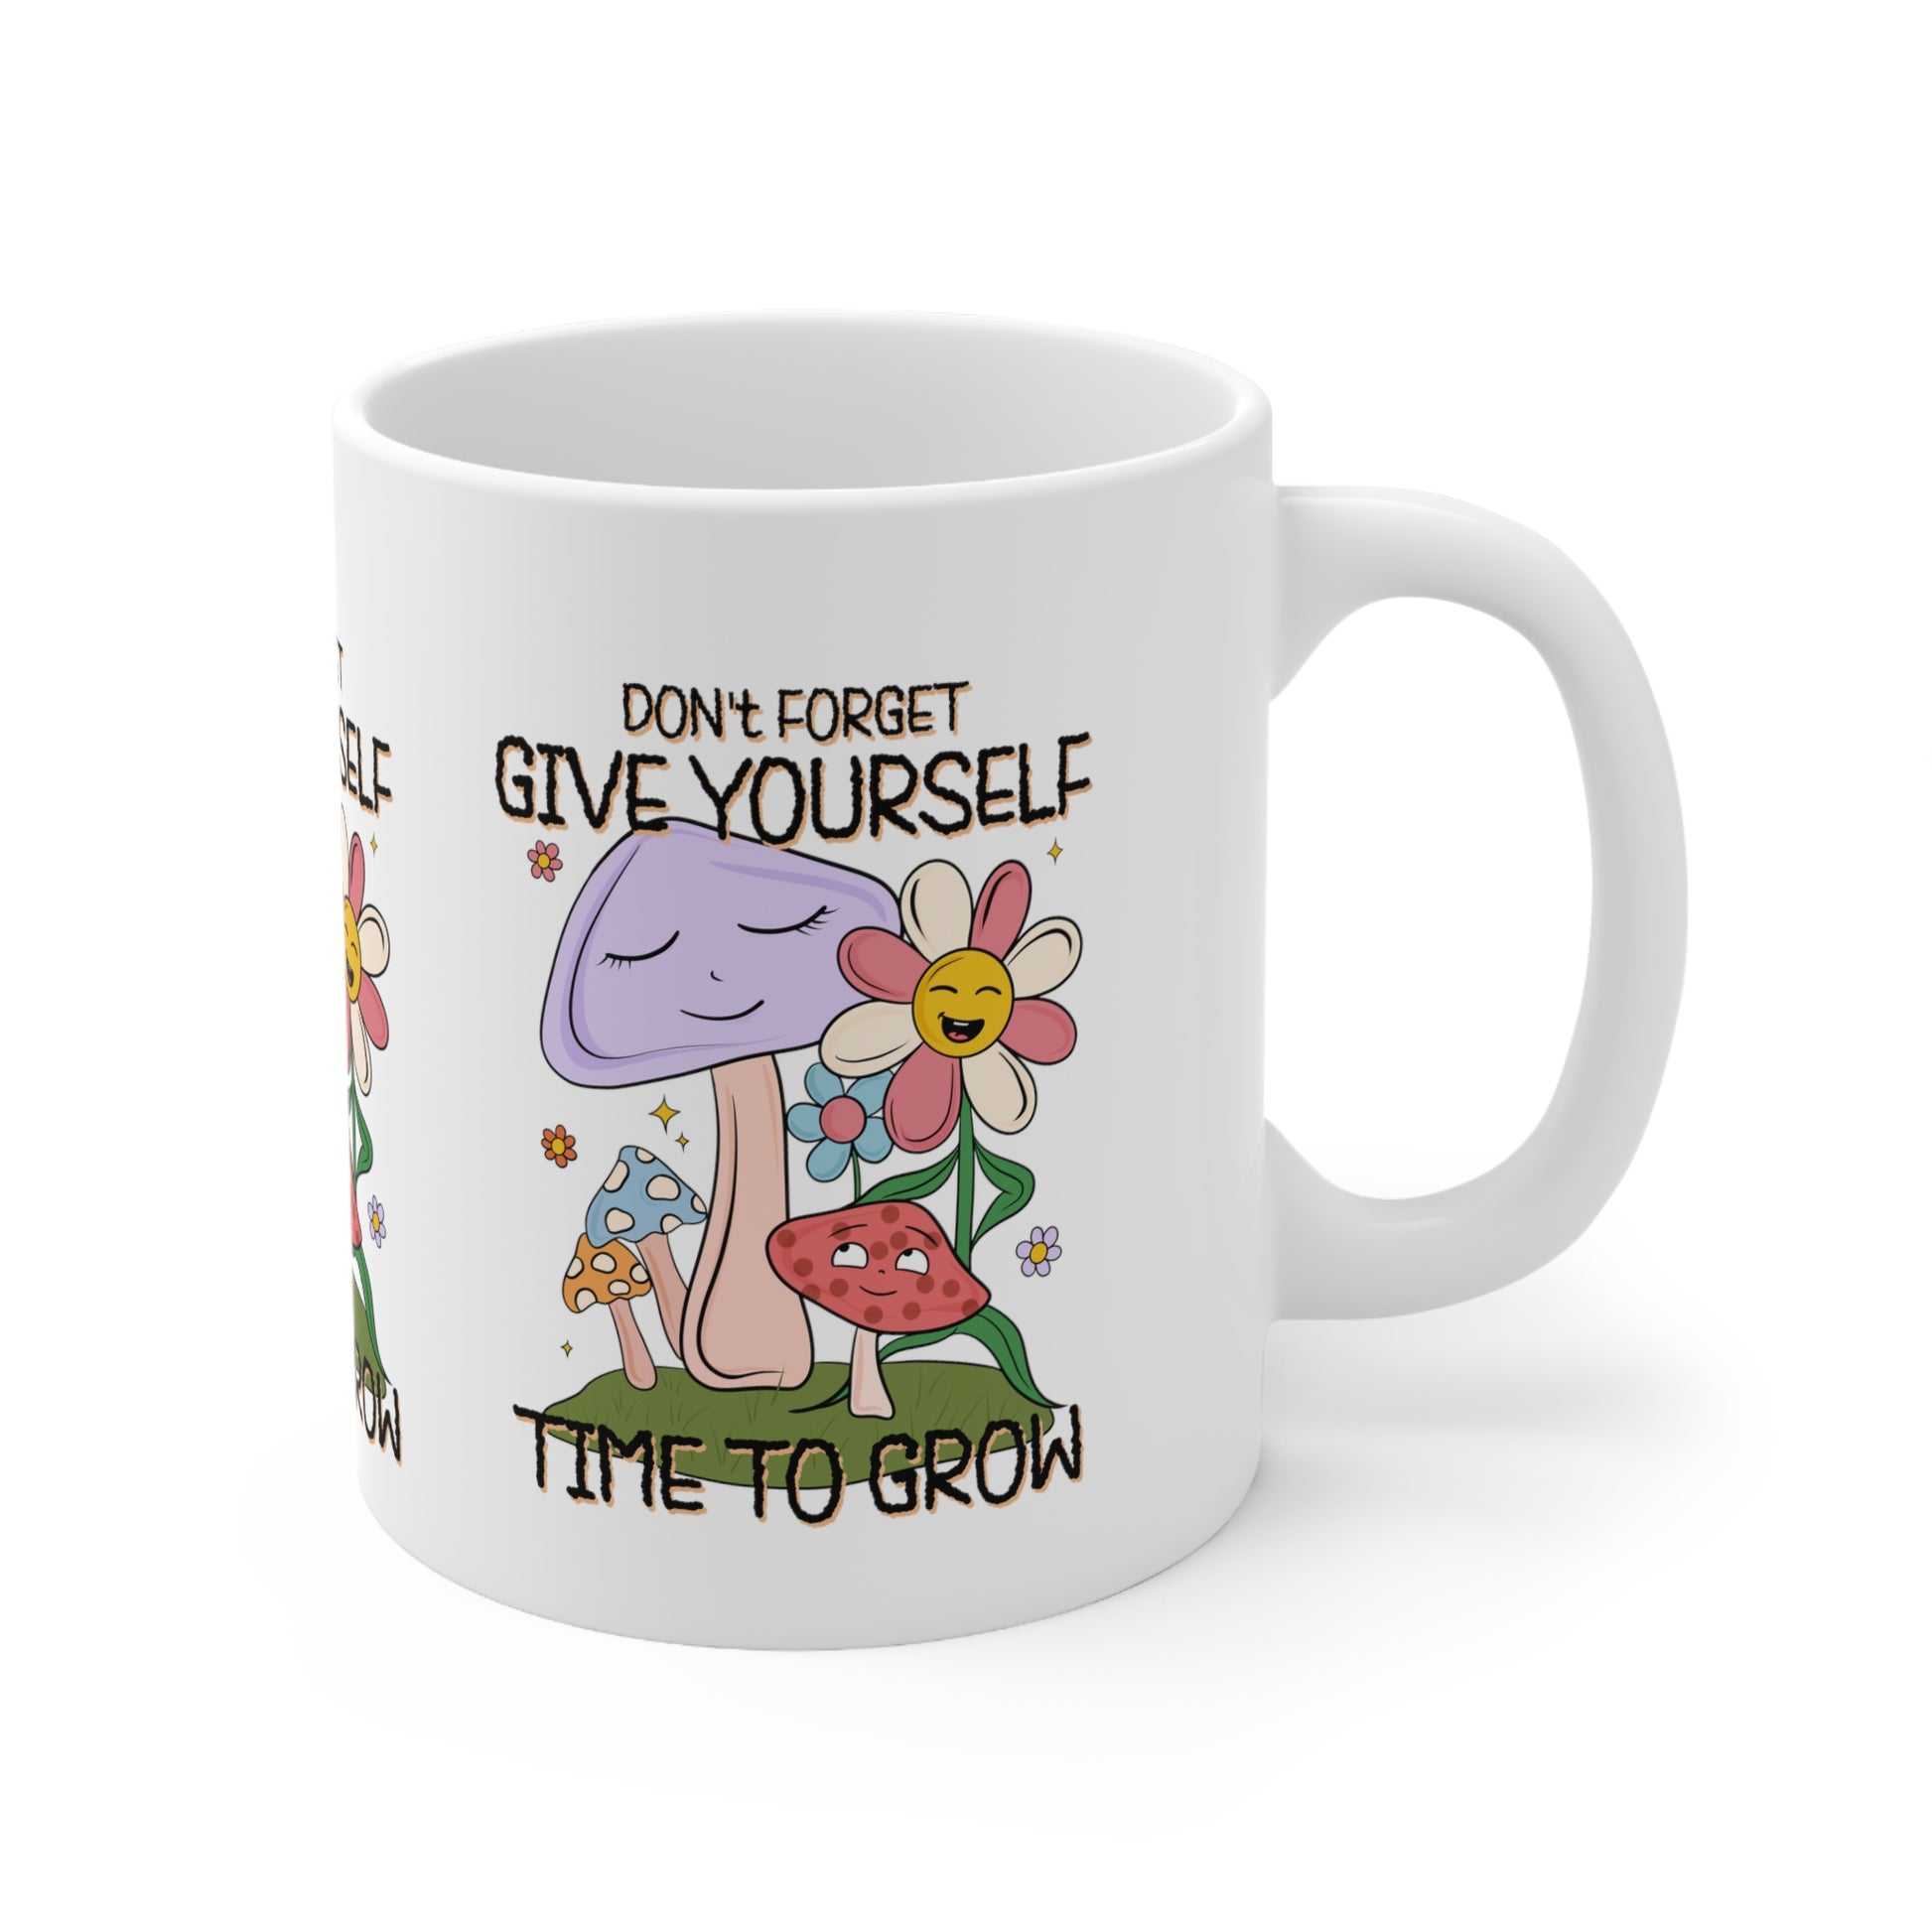 Inspirational coffee mug, don't forget give yourself time to grow, mushroom and flower mug